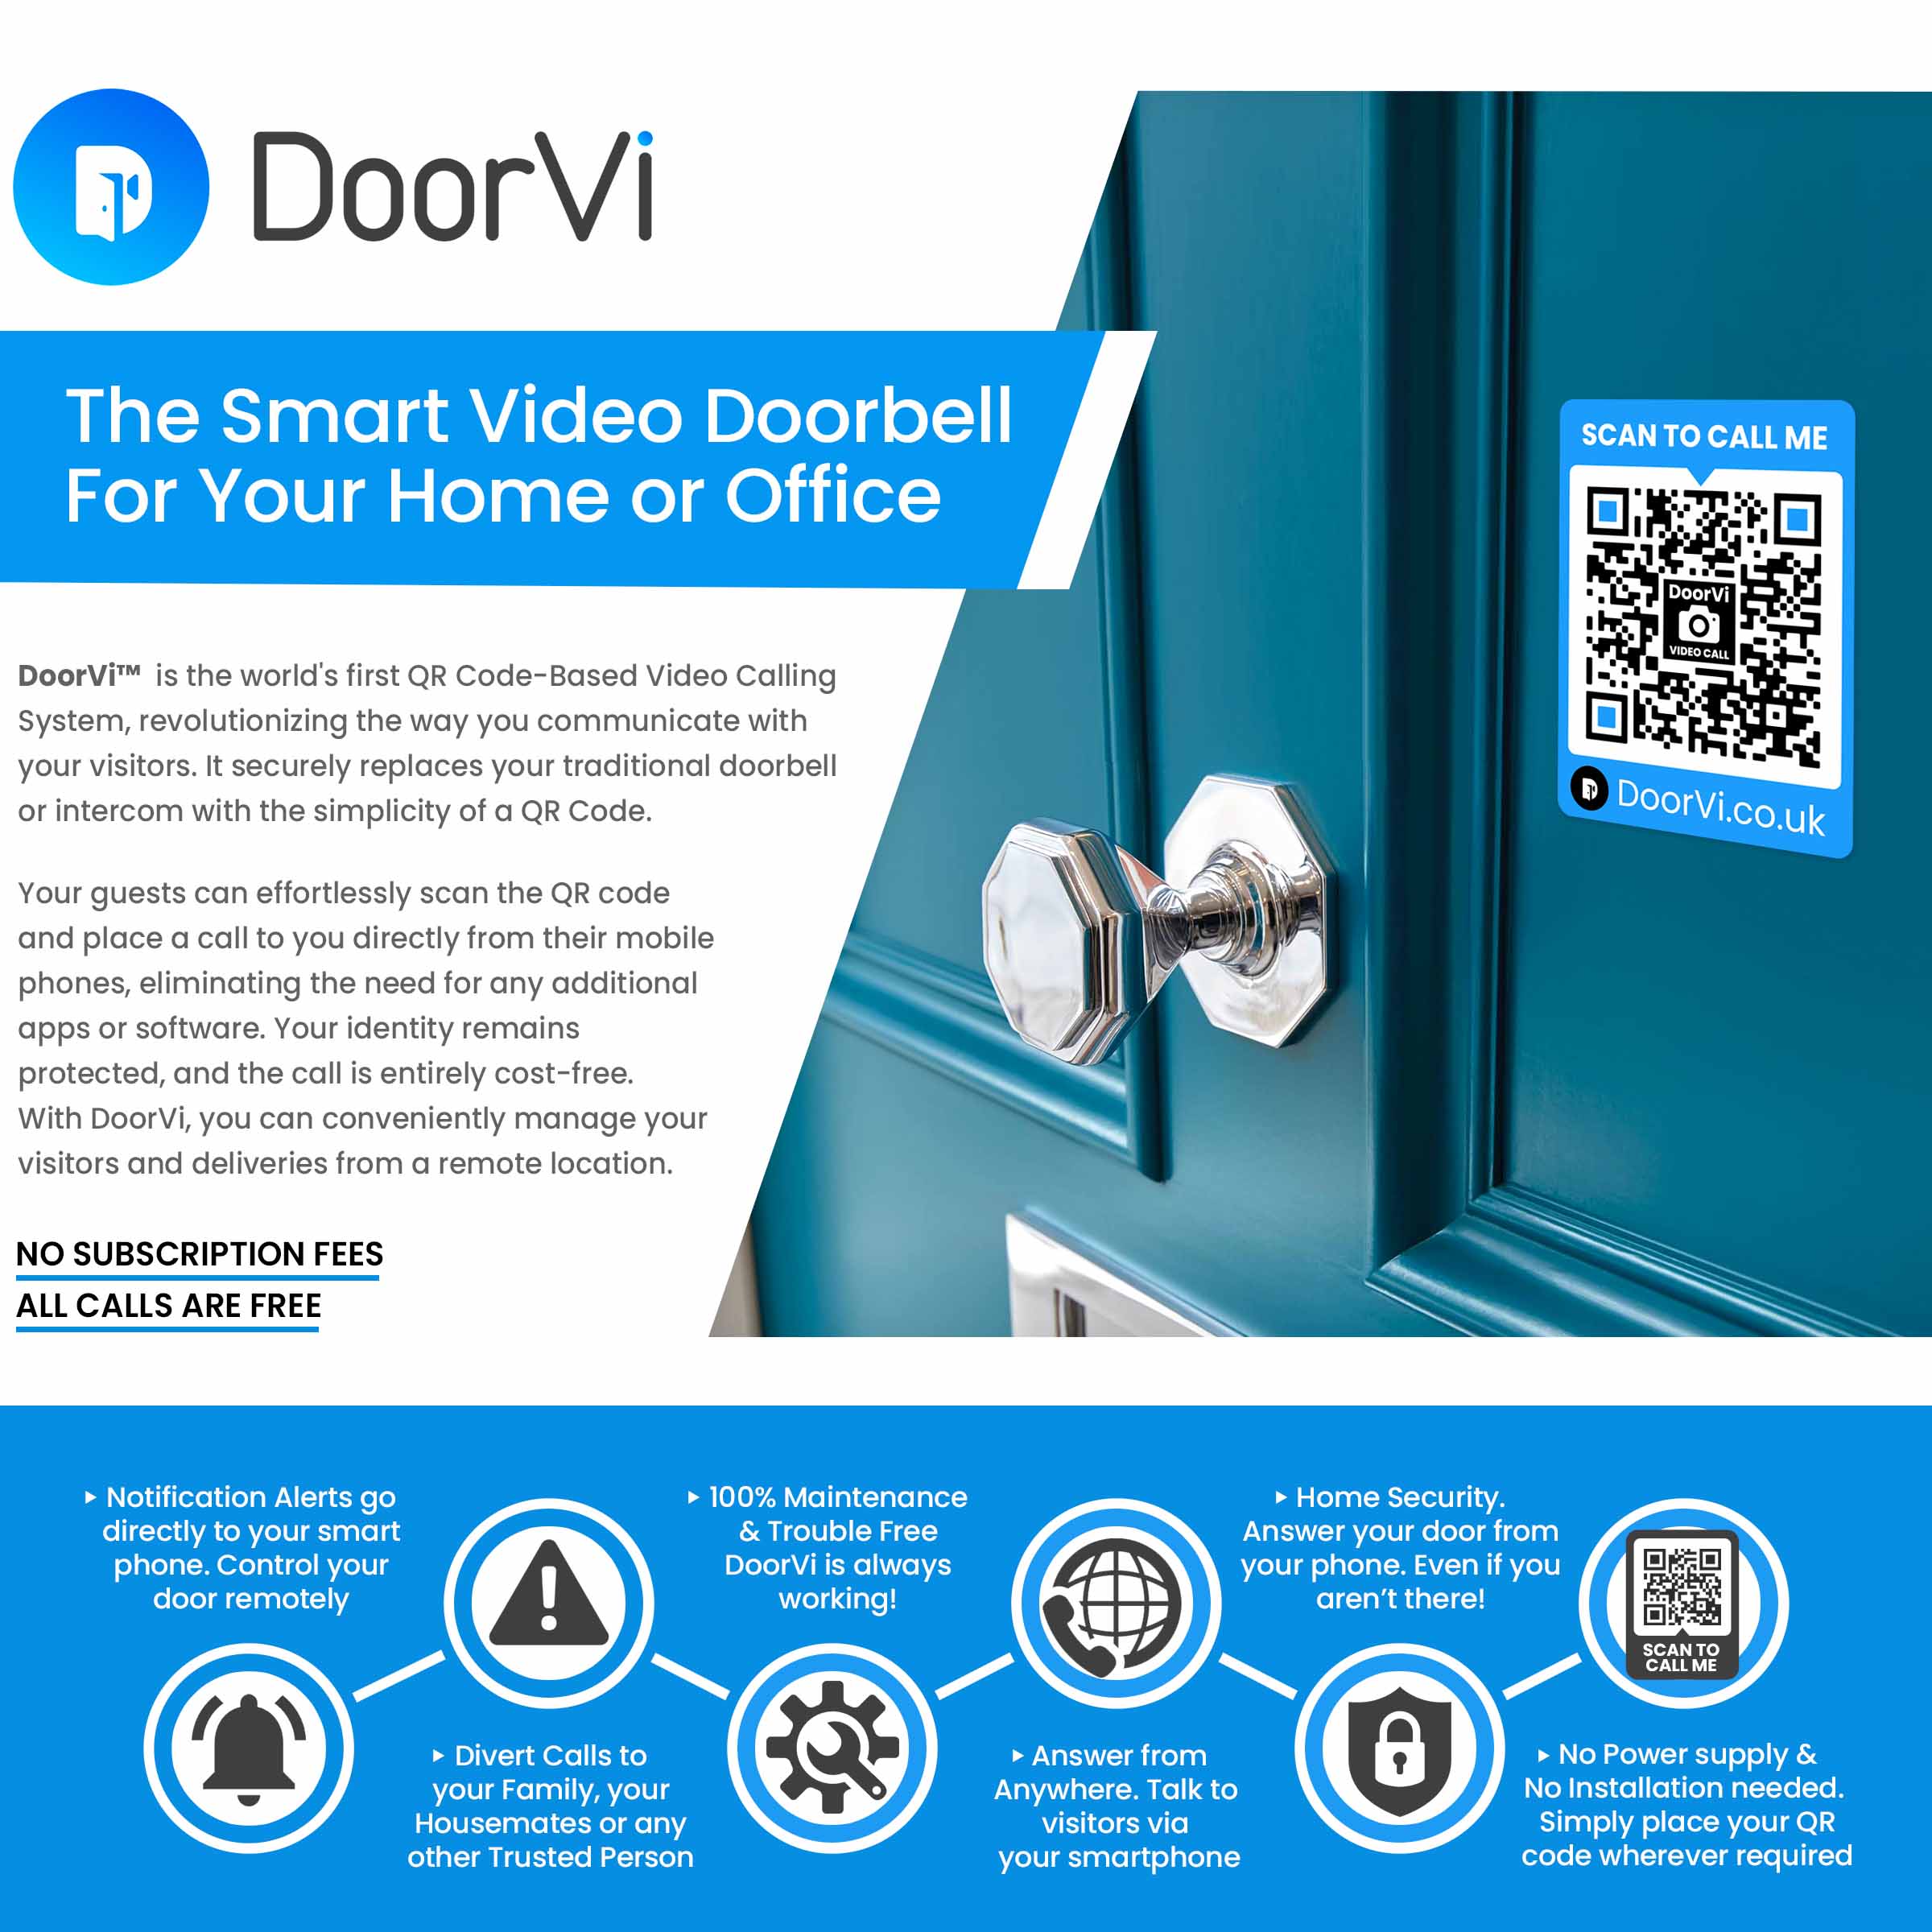 DoorVi. The Smart Video Doorbell for your home or office.